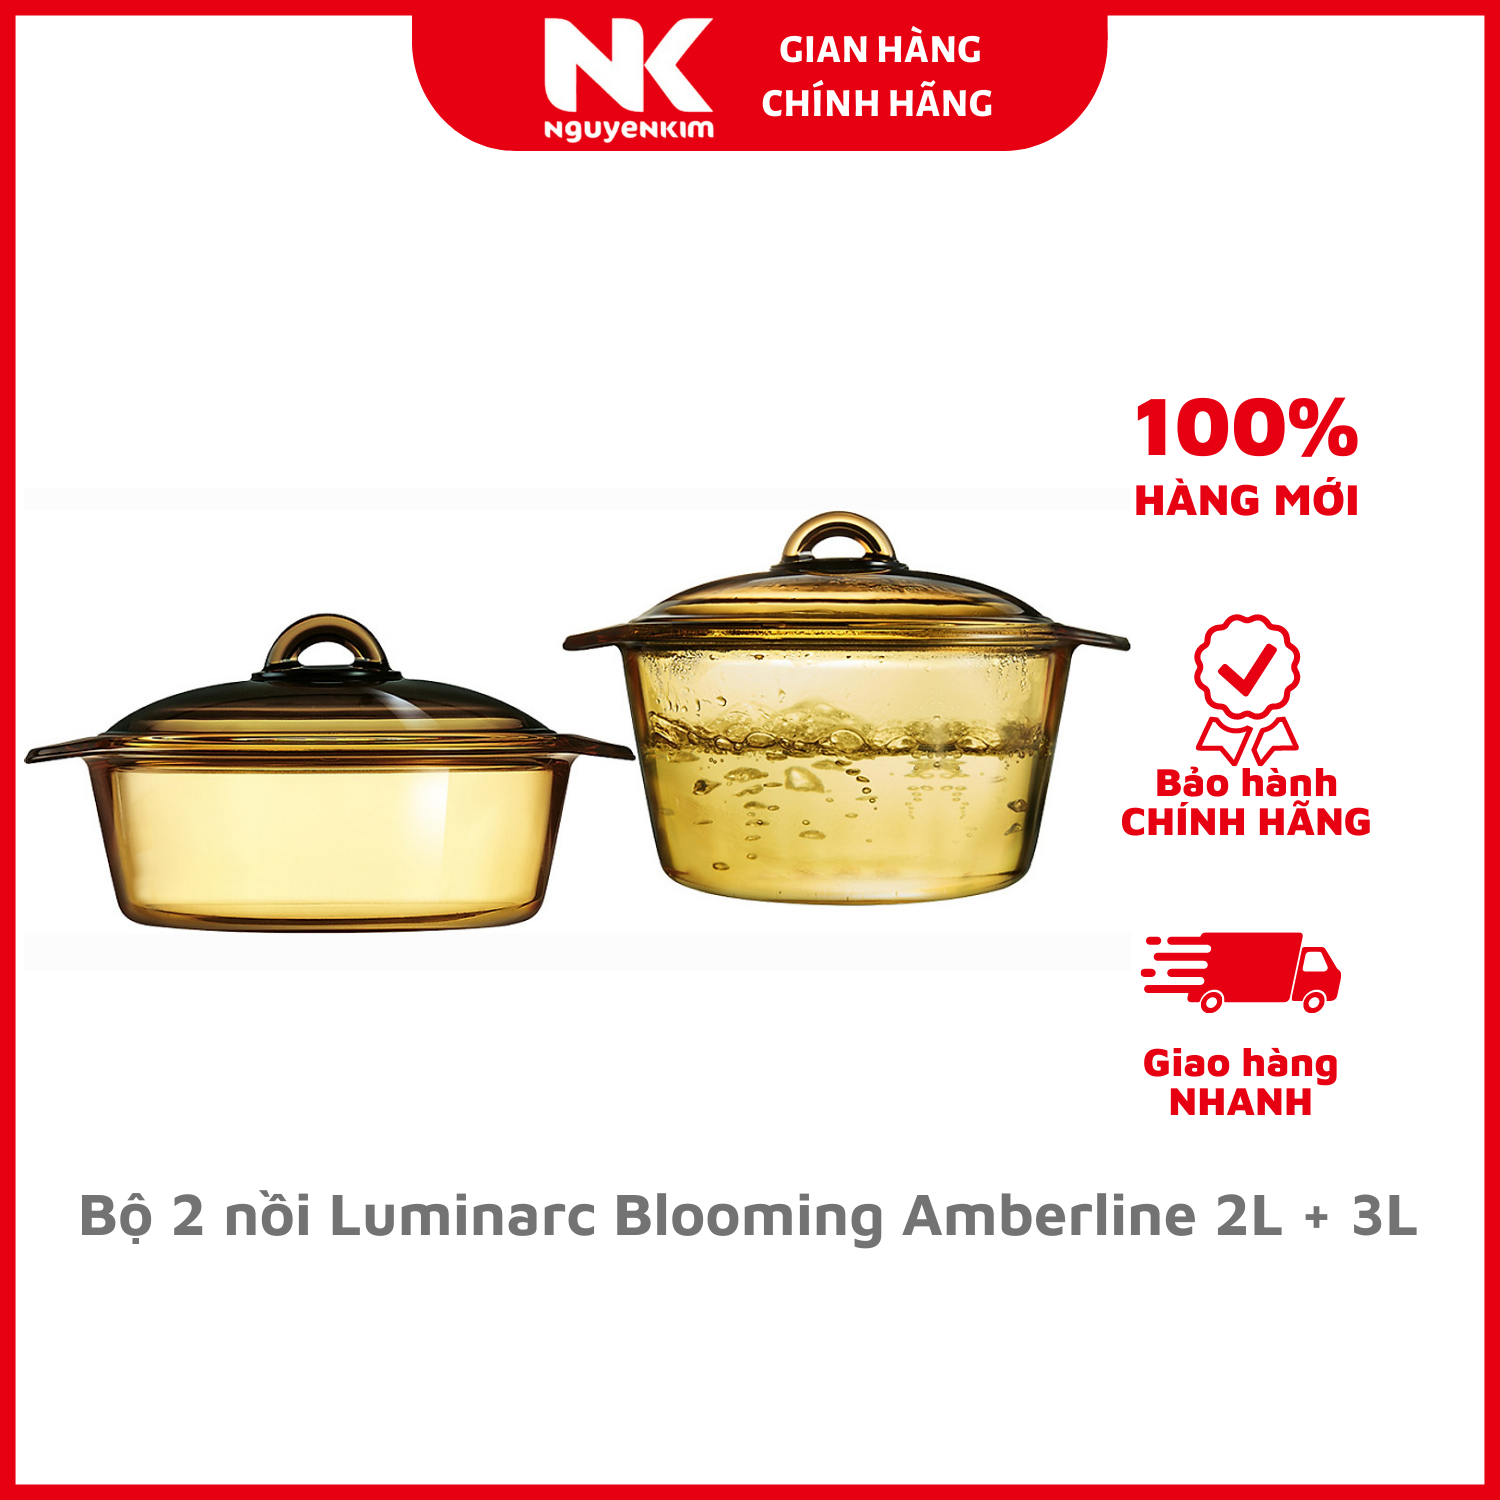 Bộ nồi Luminarc Blooming Amberline 2L 3L